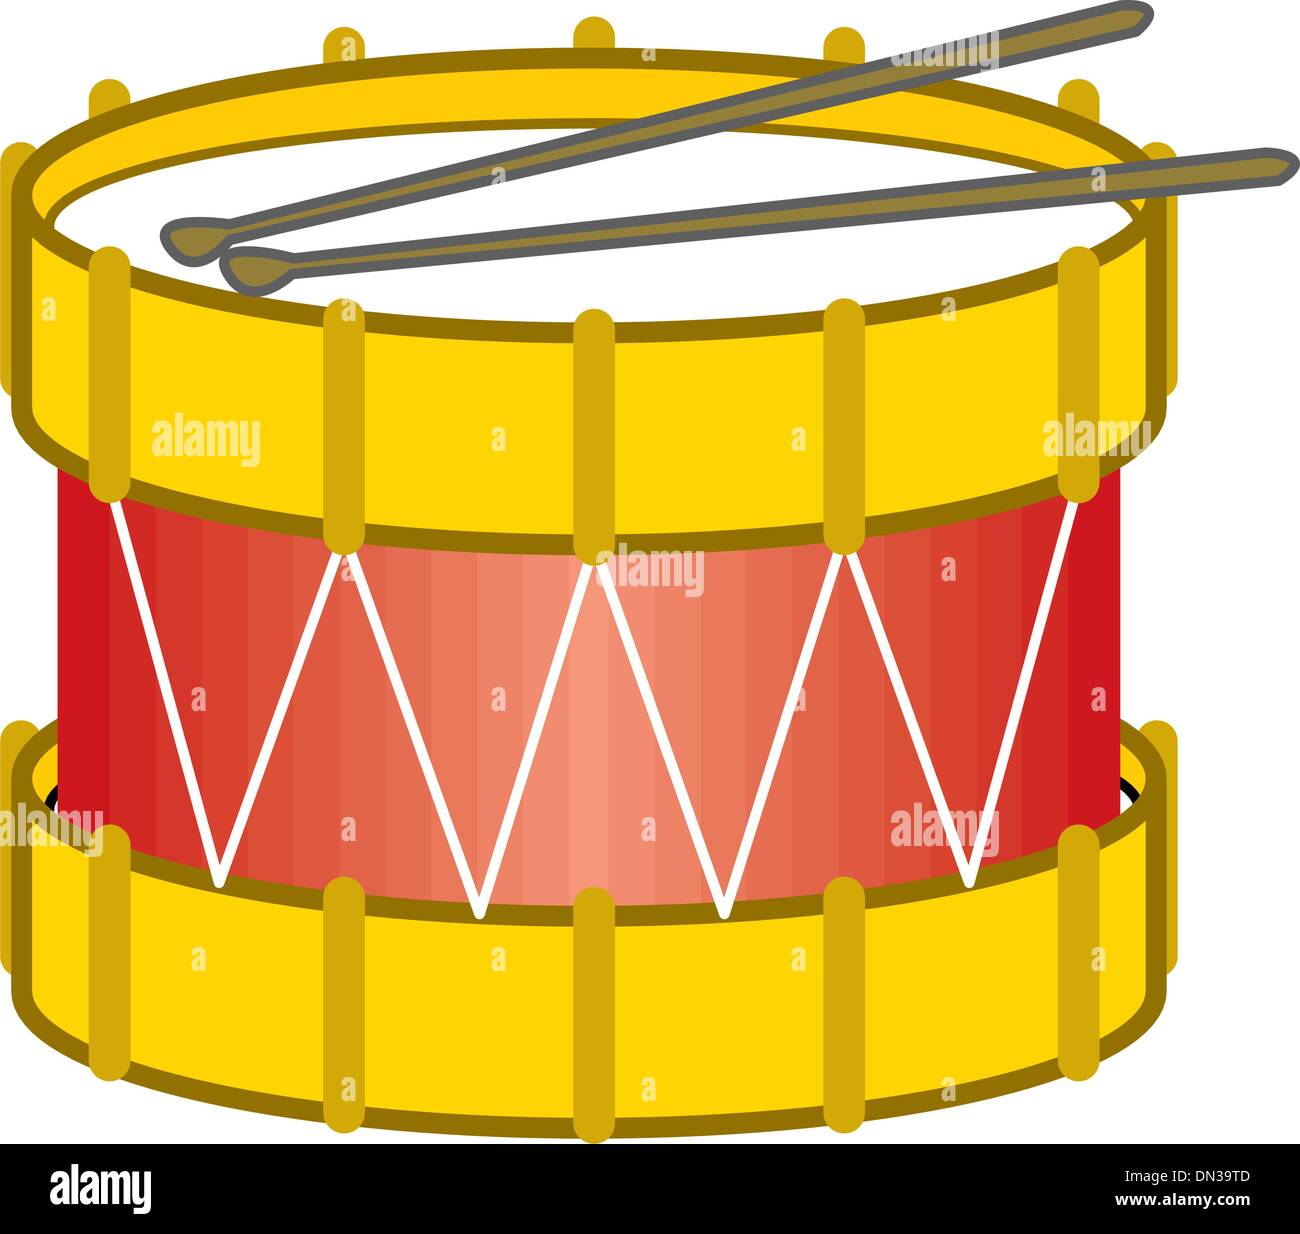 Bass drum strumento Illustrazione Vettoriale